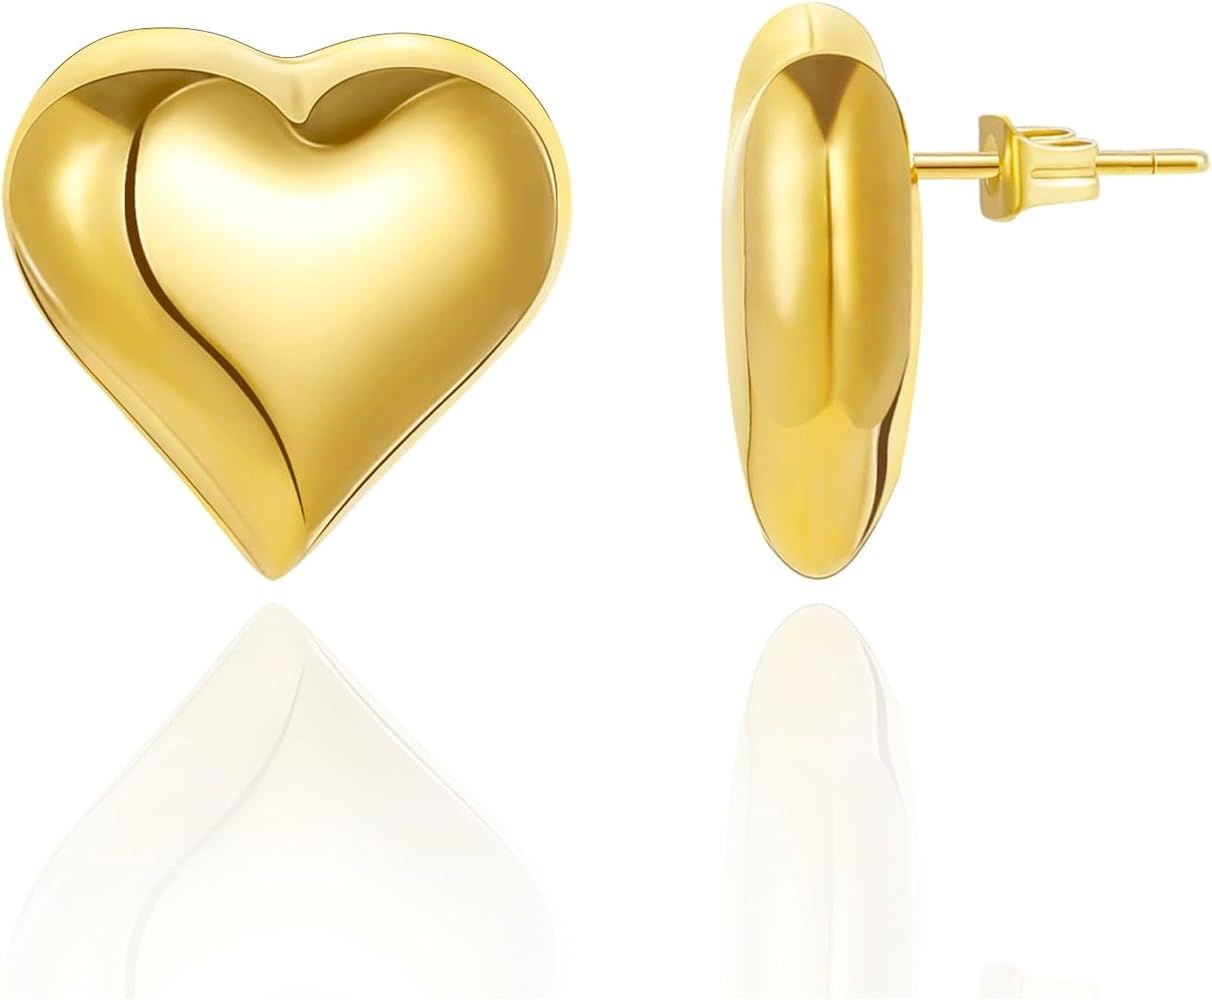 Follome Puffy Heart Earrings 18k Gold Heart Earrings Chunky Heart Earrings Stud Trendy Statement ... | Amazon (US)